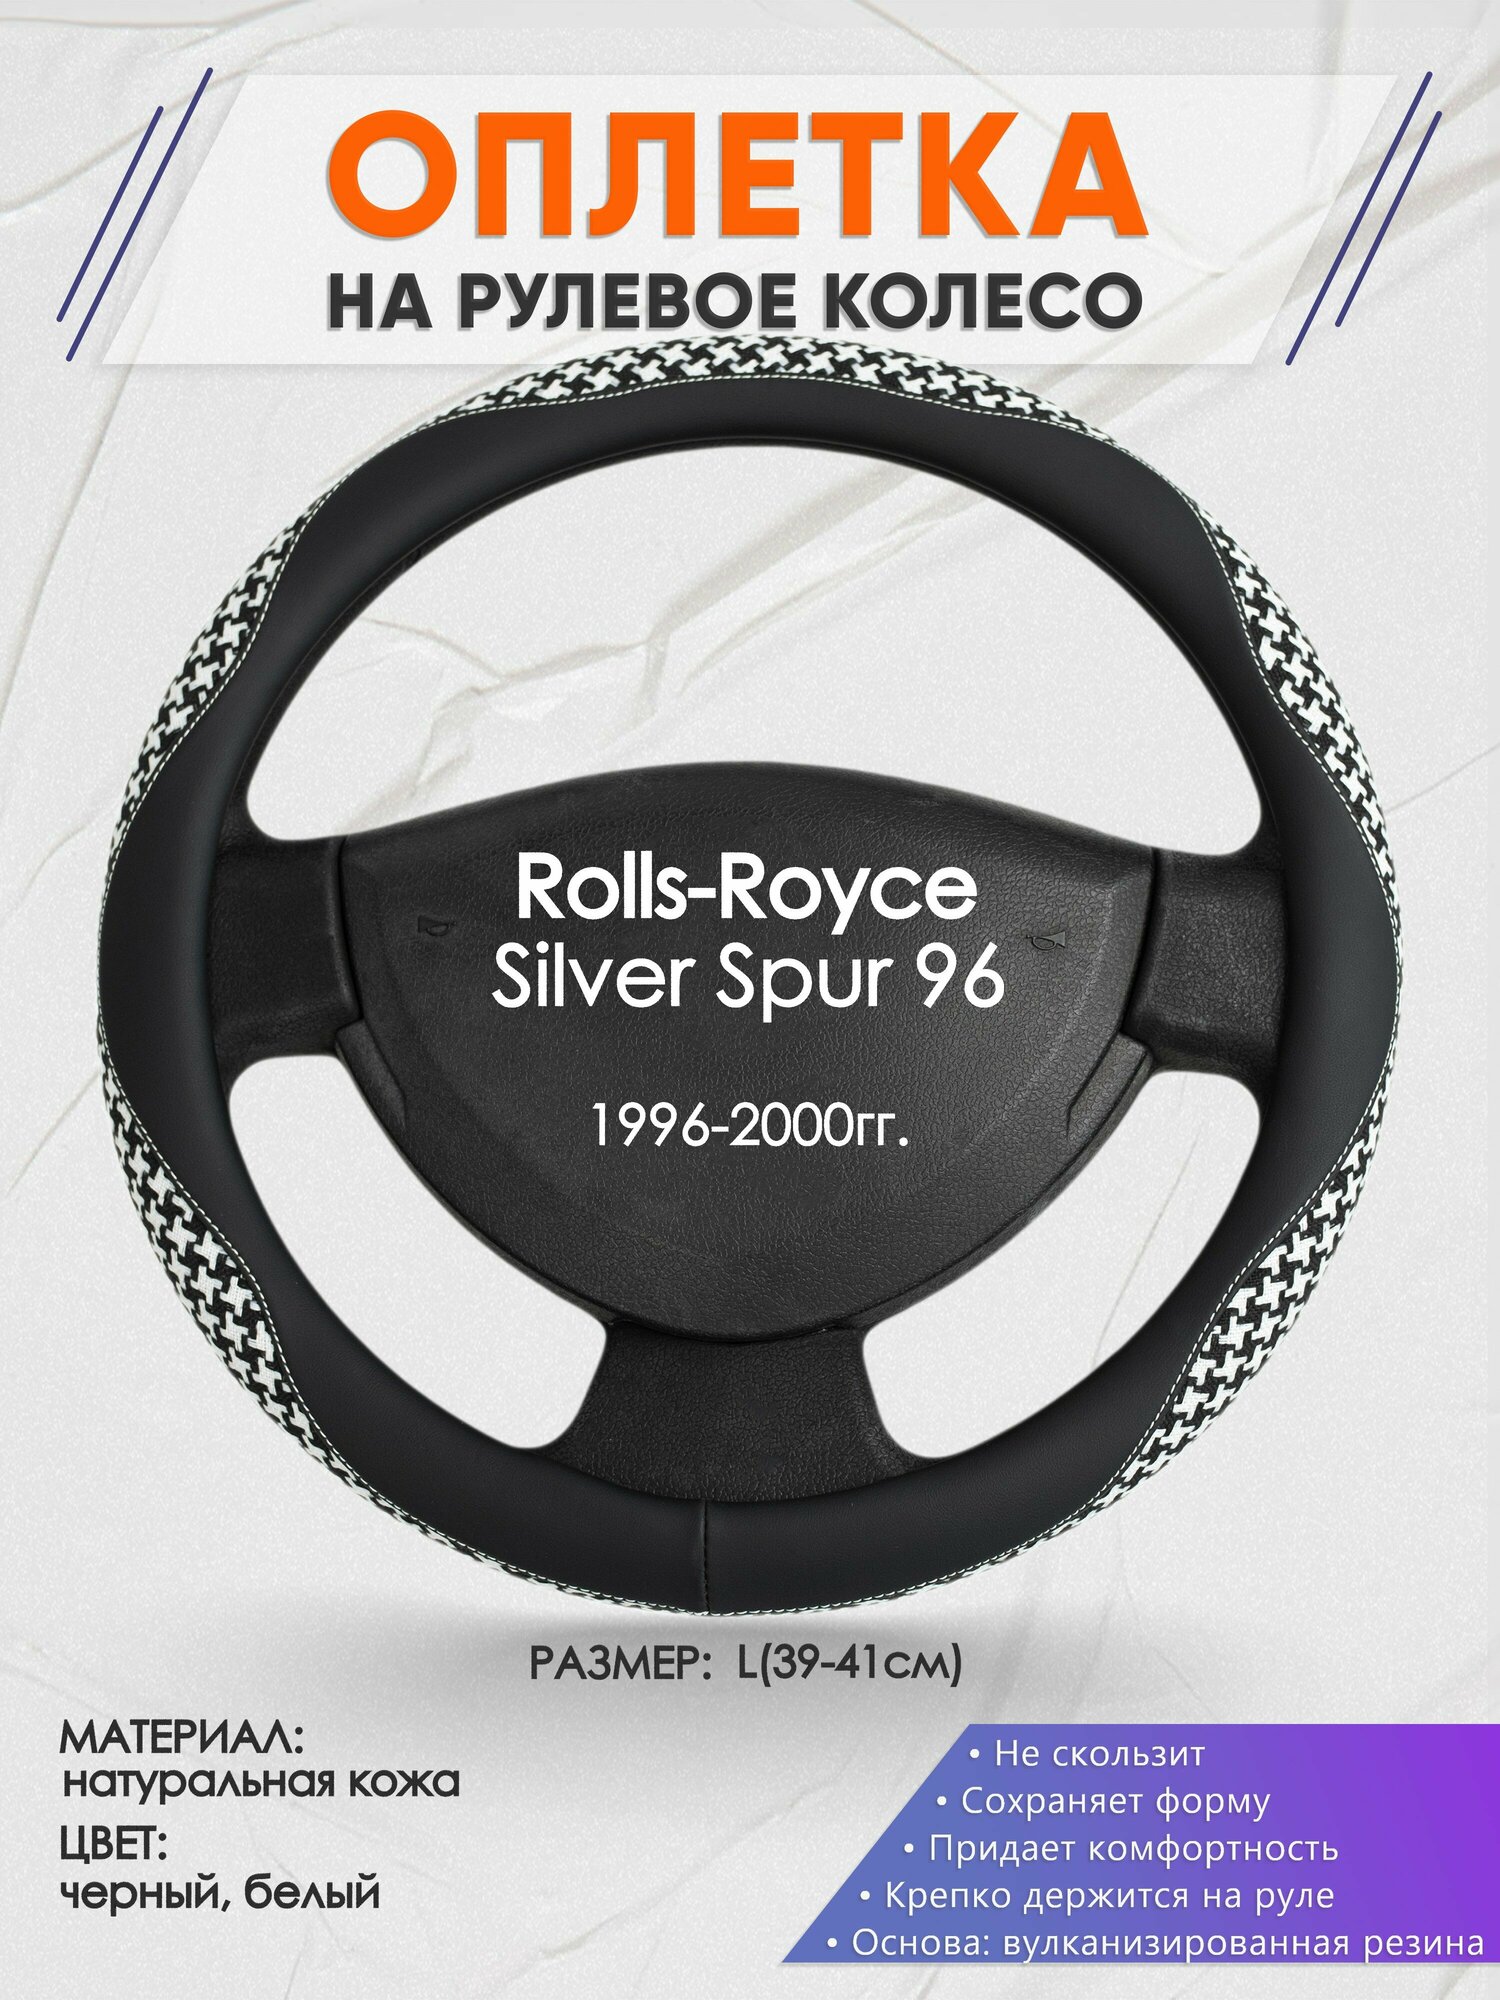 Оплетка на руль для Rolls-Royce Silver Spur 96(РоллсРойс Силвер Спур) 1996-2000, L(39-41см), Натуральная кожа 21